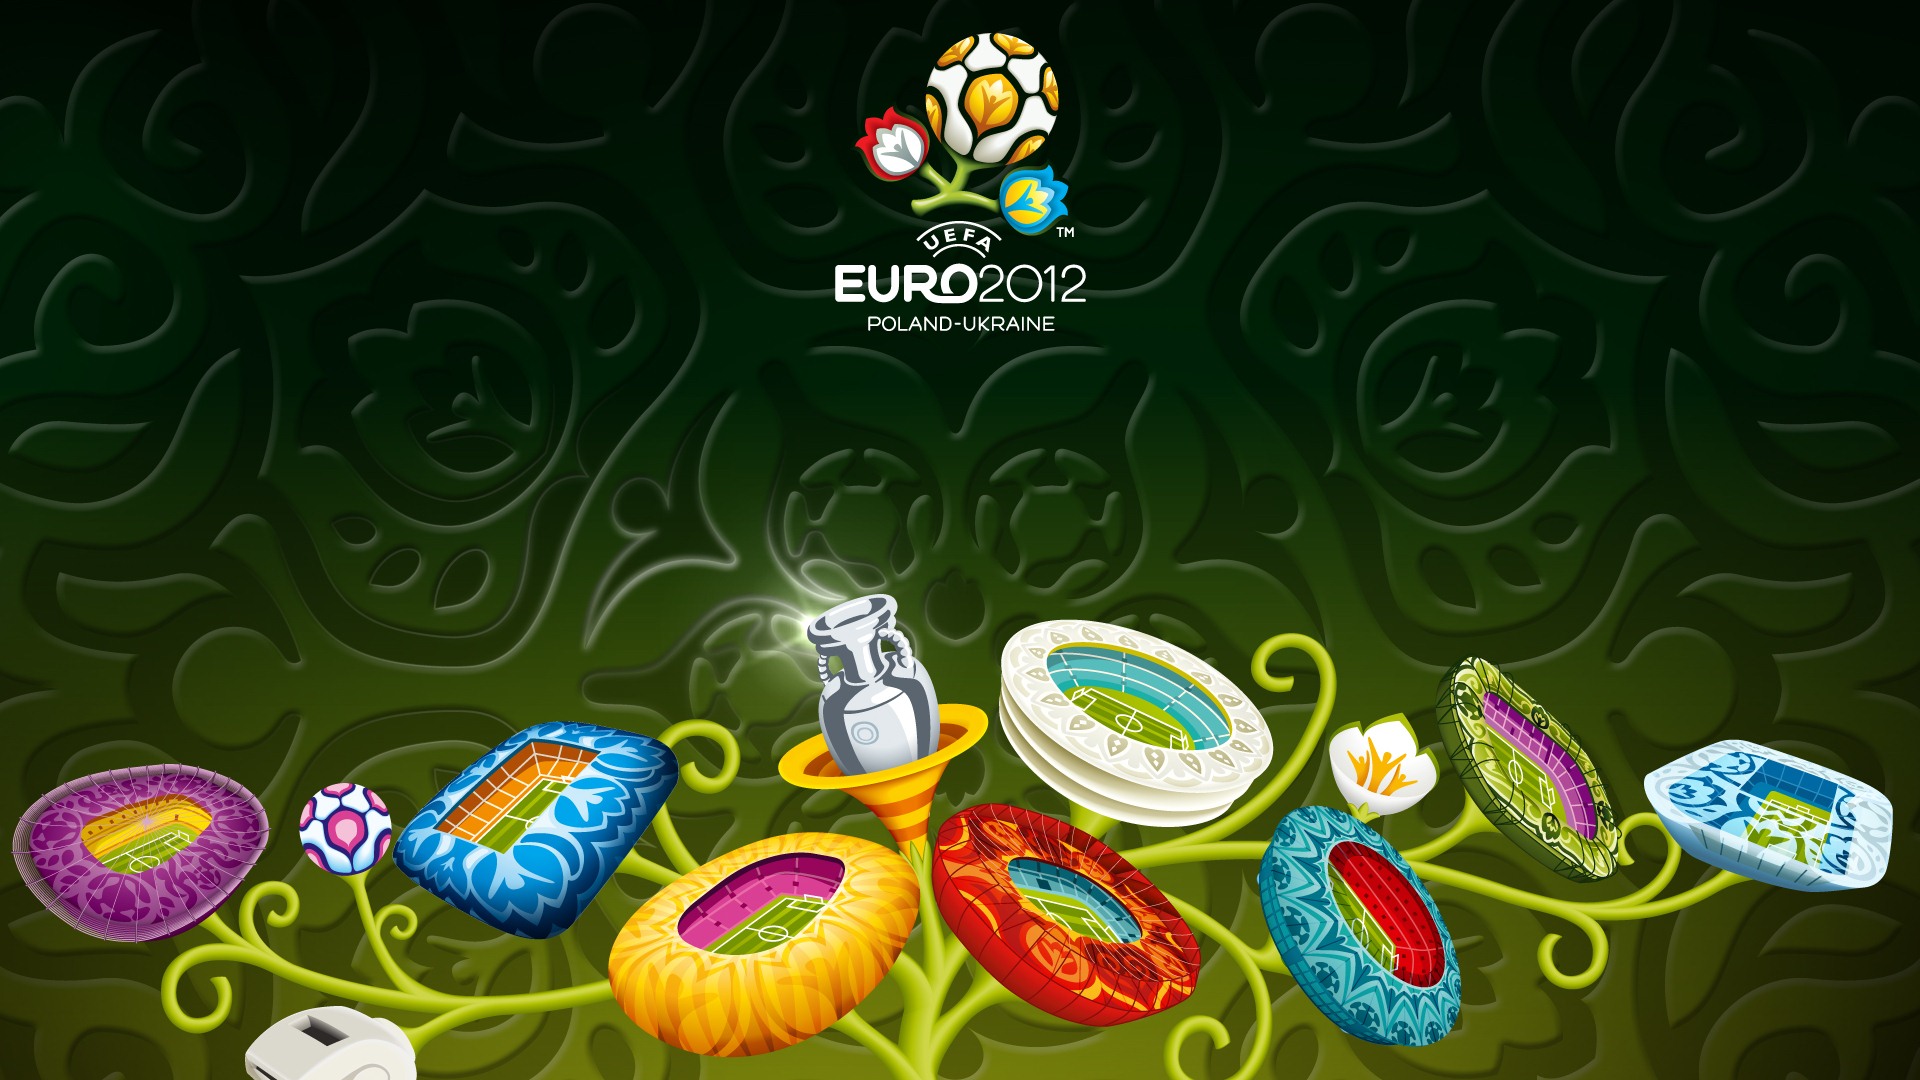 UEFA EURO 2012 欧洲足球锦标赛 高清壁纸(二)11 - 1920x1080